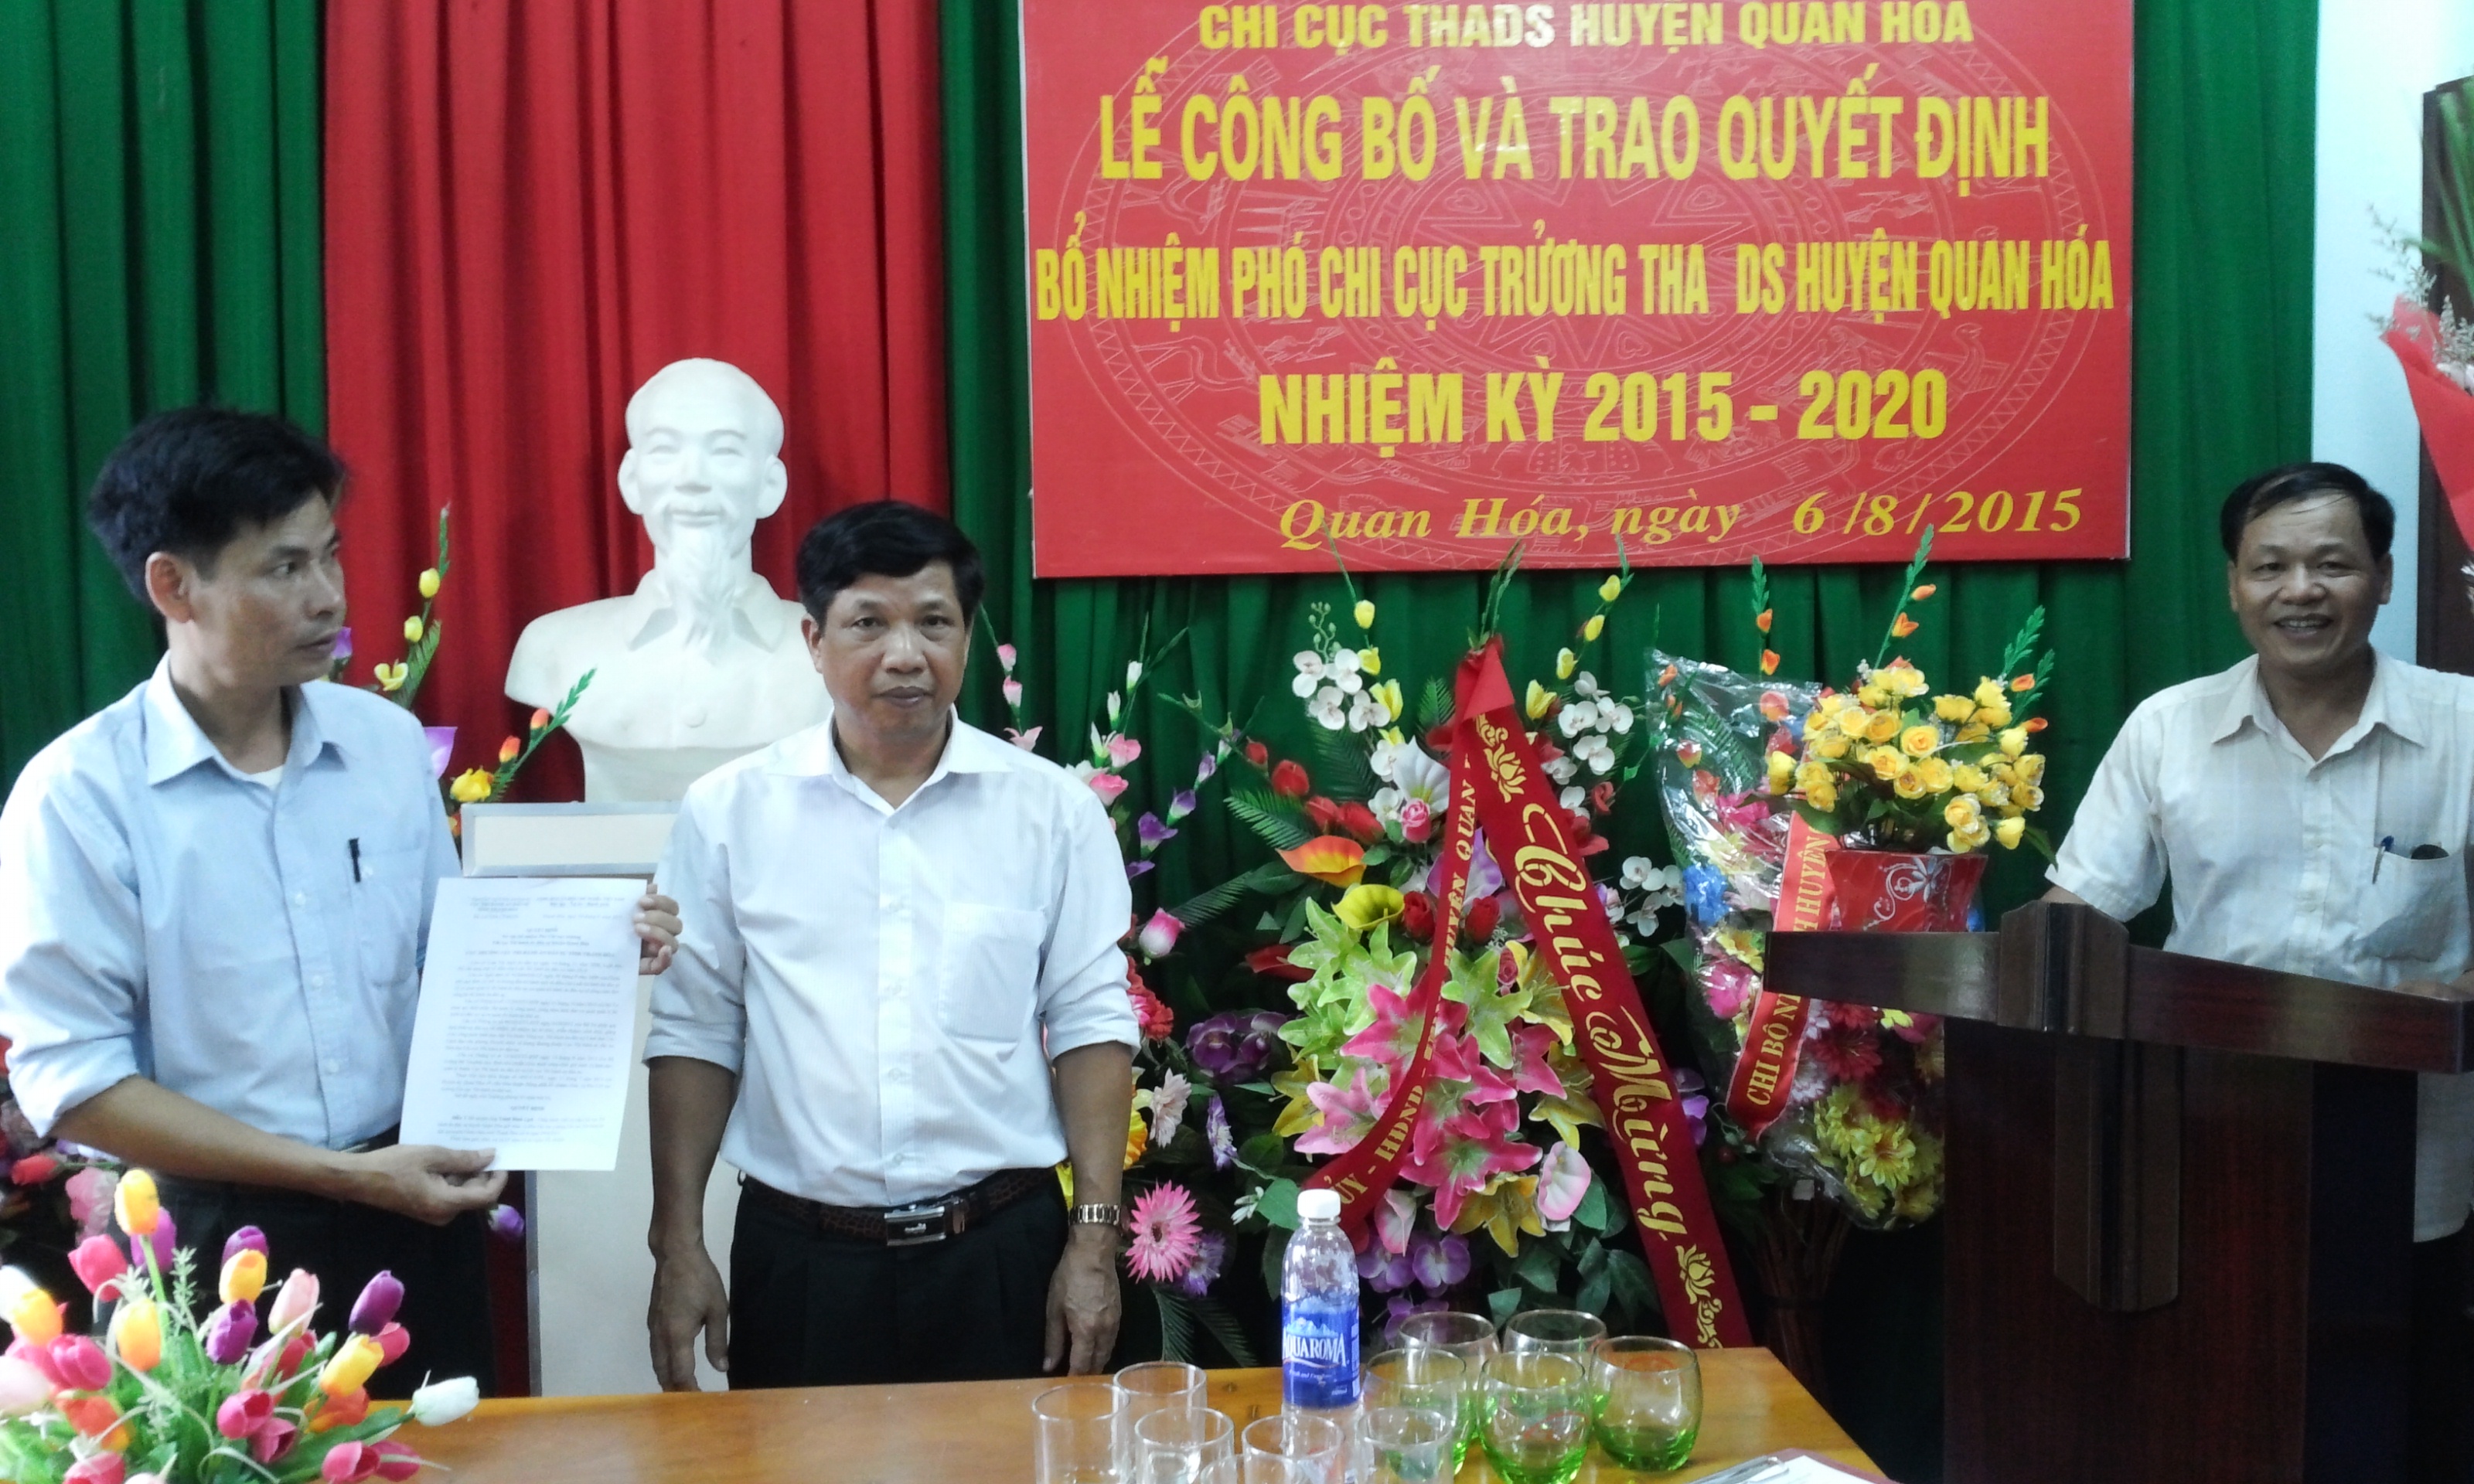 Công bố quyết định bổ nhiệm Phó Chi cục trưởng Chi cục THADS huyện Quan Hóa